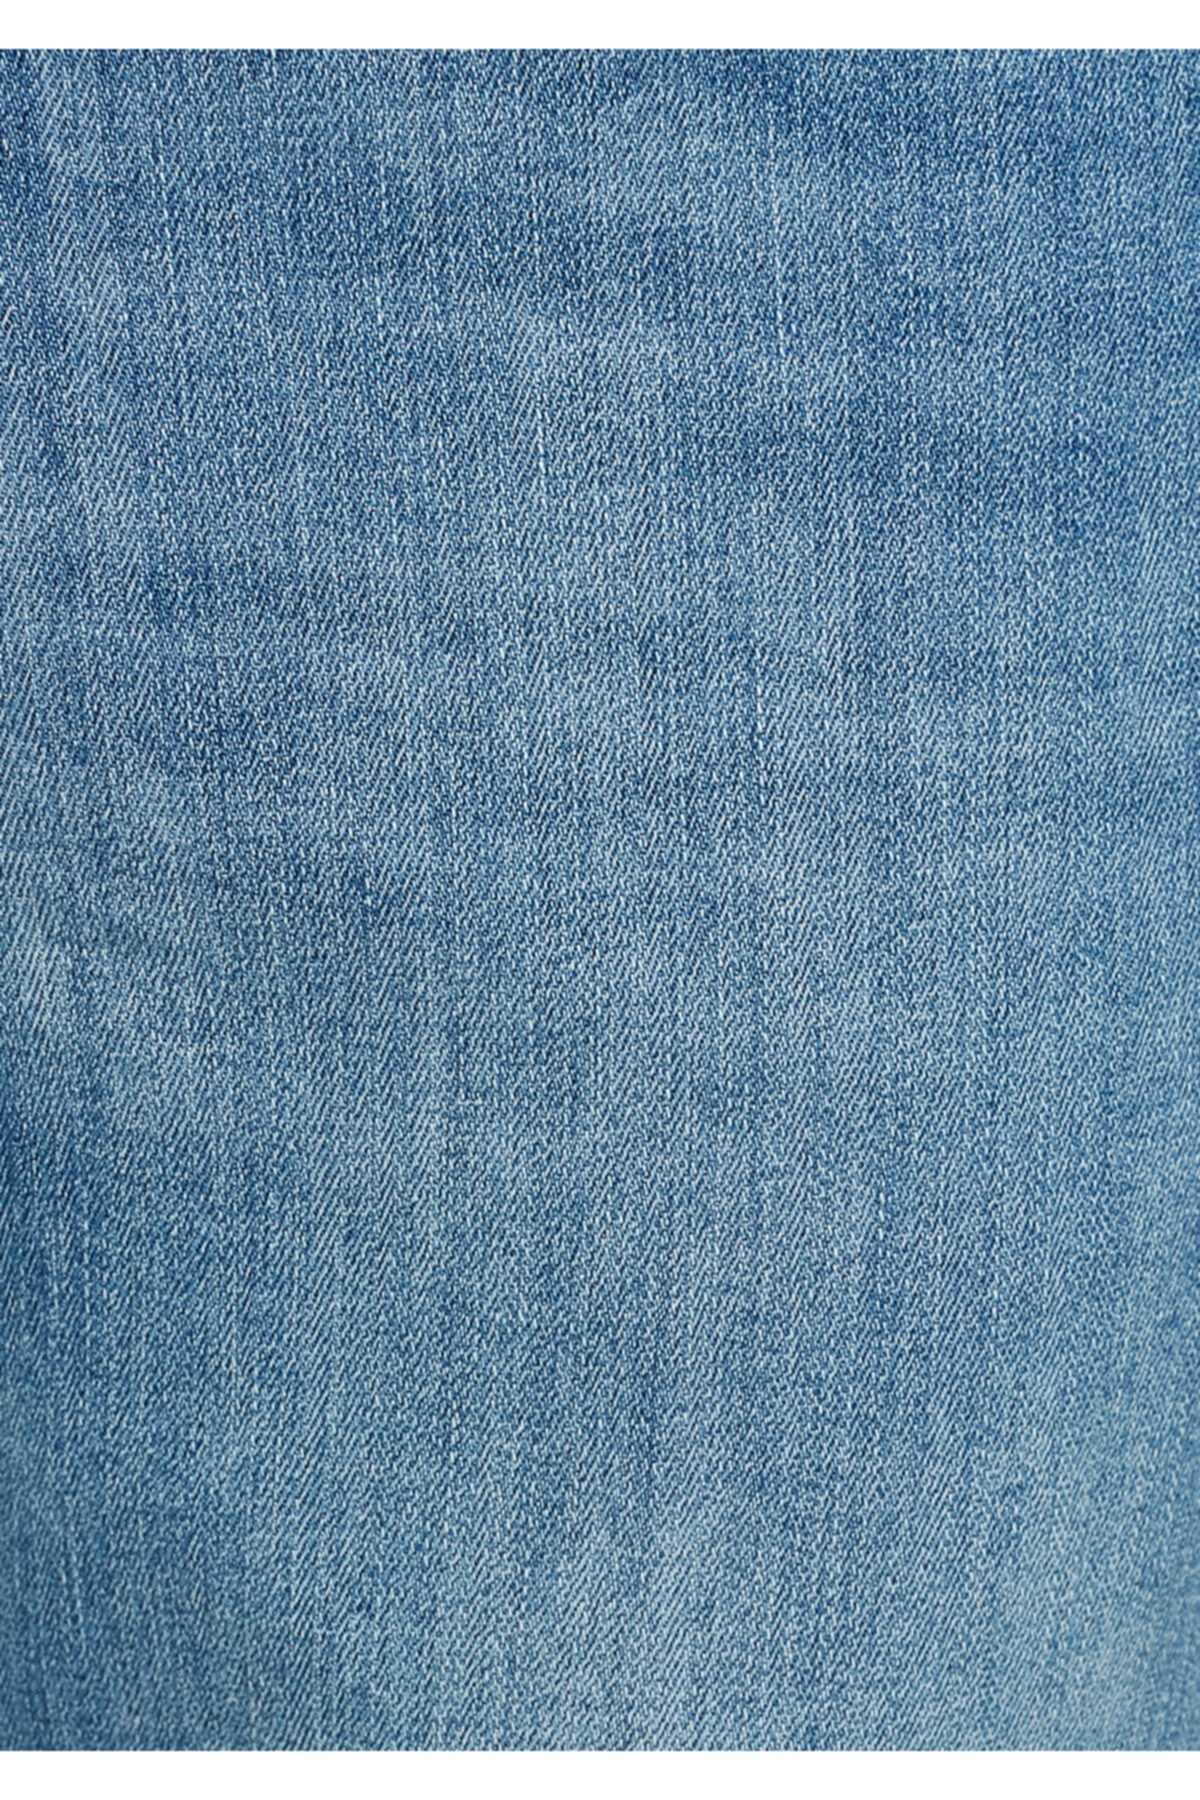 شلوار جین مردانه فانتزی برند ماوی رنگ آبی کد ty46207690